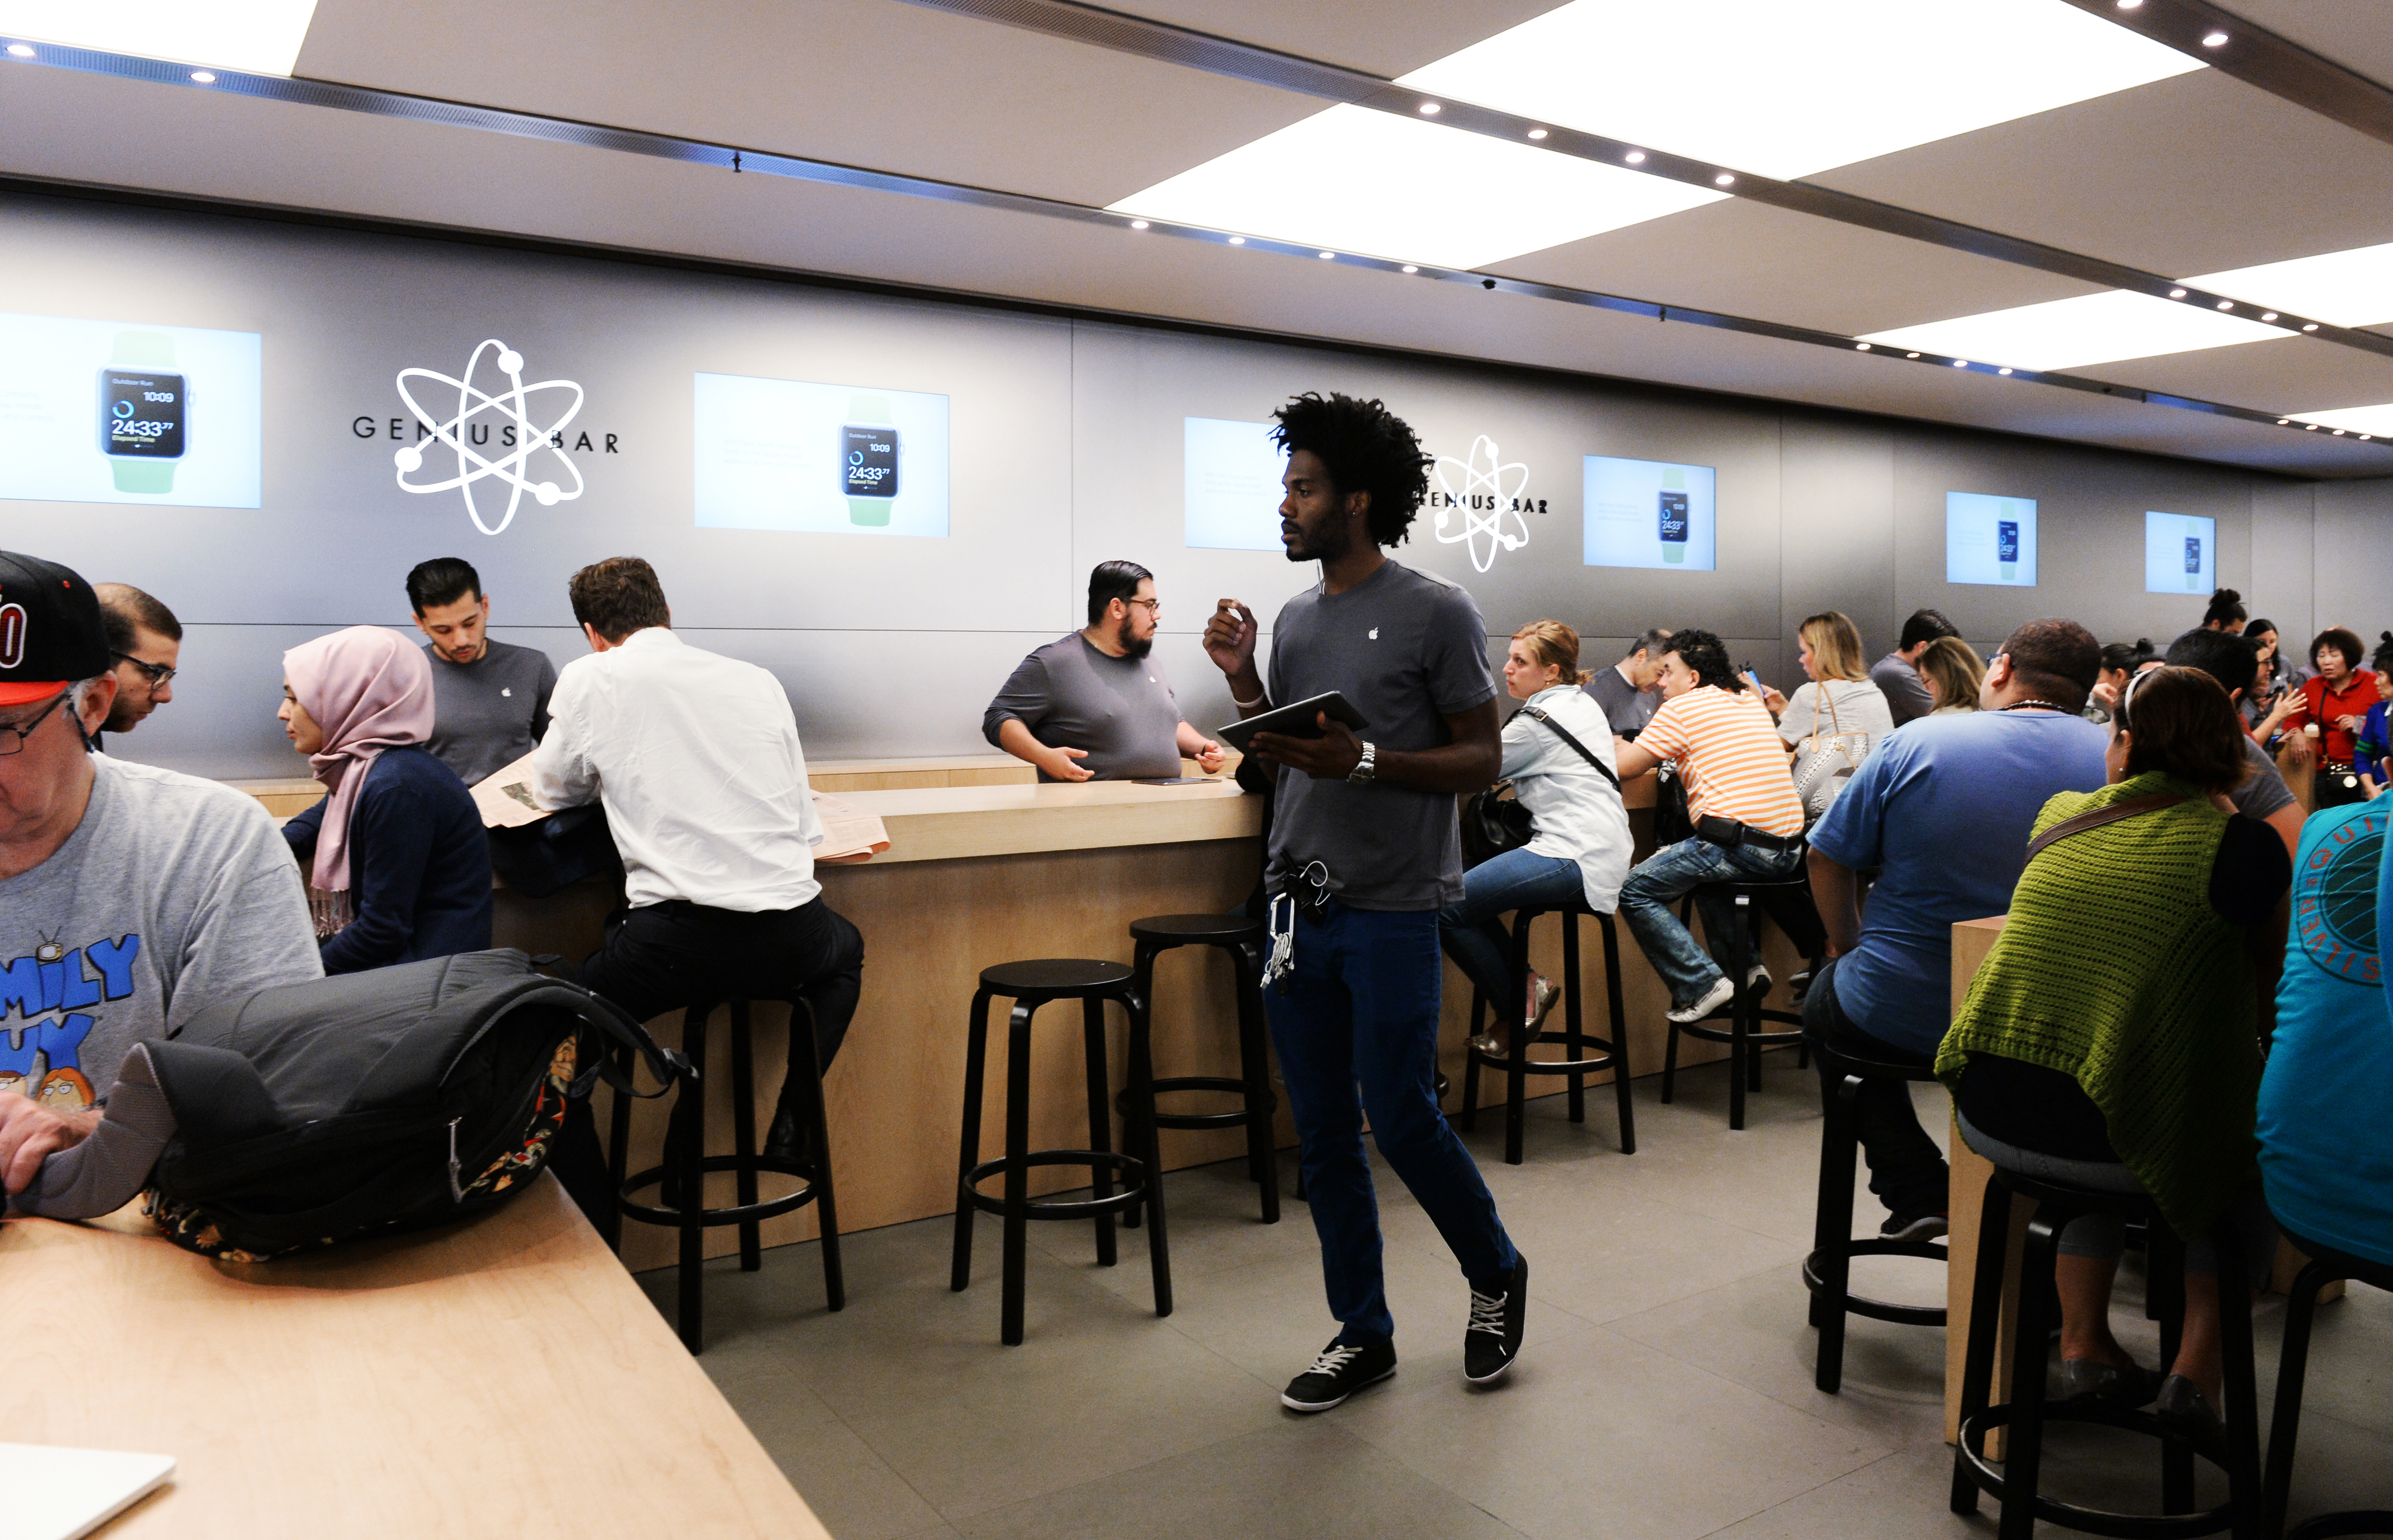 Csúcsra jár a Genius Bar az Apple New York-i üzletében az 5. sugárúton